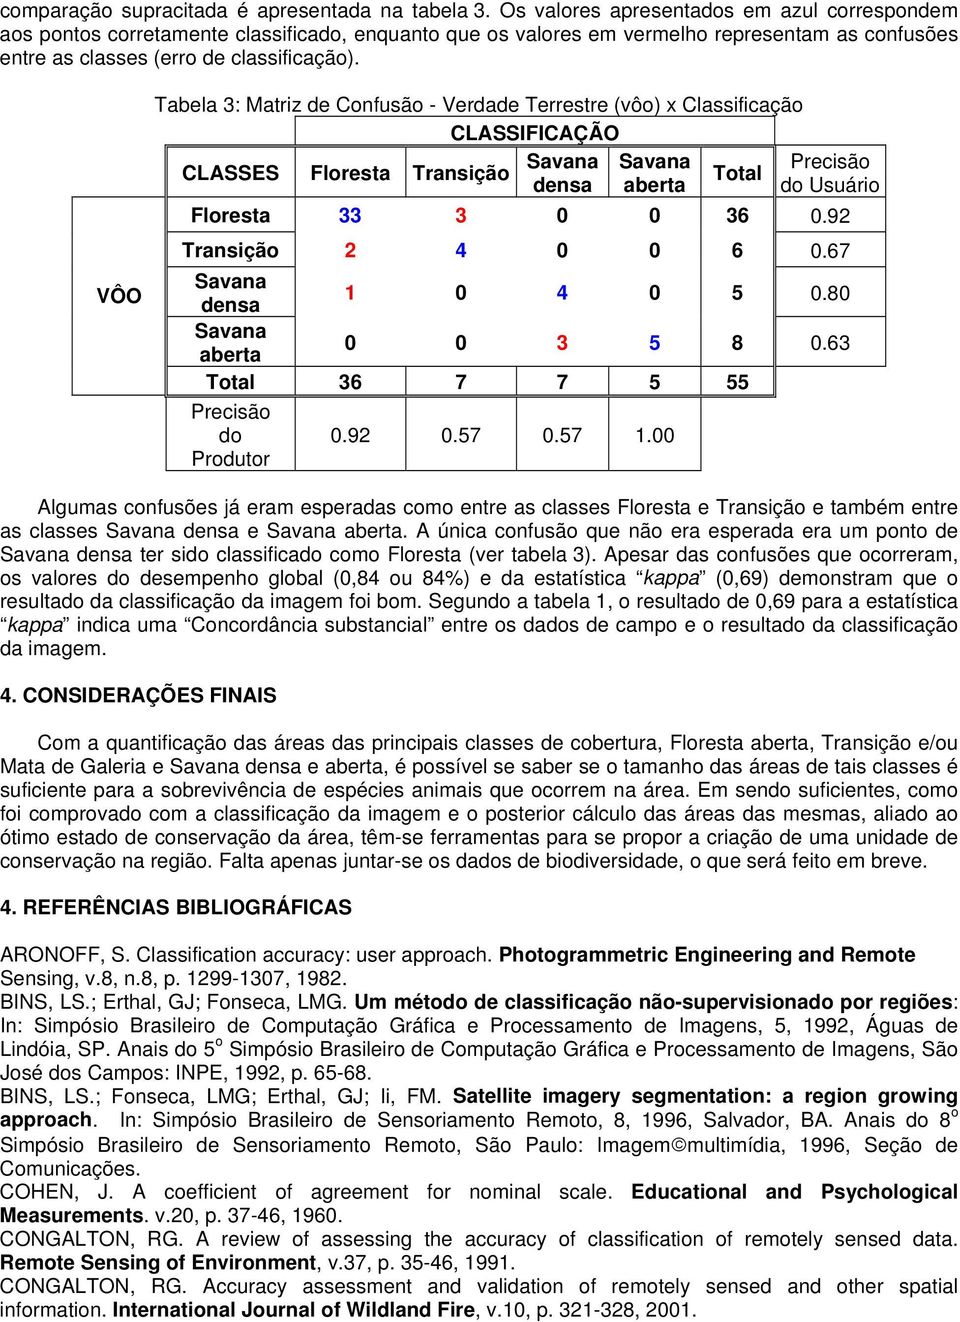 VÔO Tabela 3: Matriz de Confusão - Verdade Terrestre (vôo) x Classificação CLASSIFICAÇÃO CLASSES Floresta Transição Savana Savana Precisão Total densa aberta do Usuário Floresta 33 3 0 0 36 0.